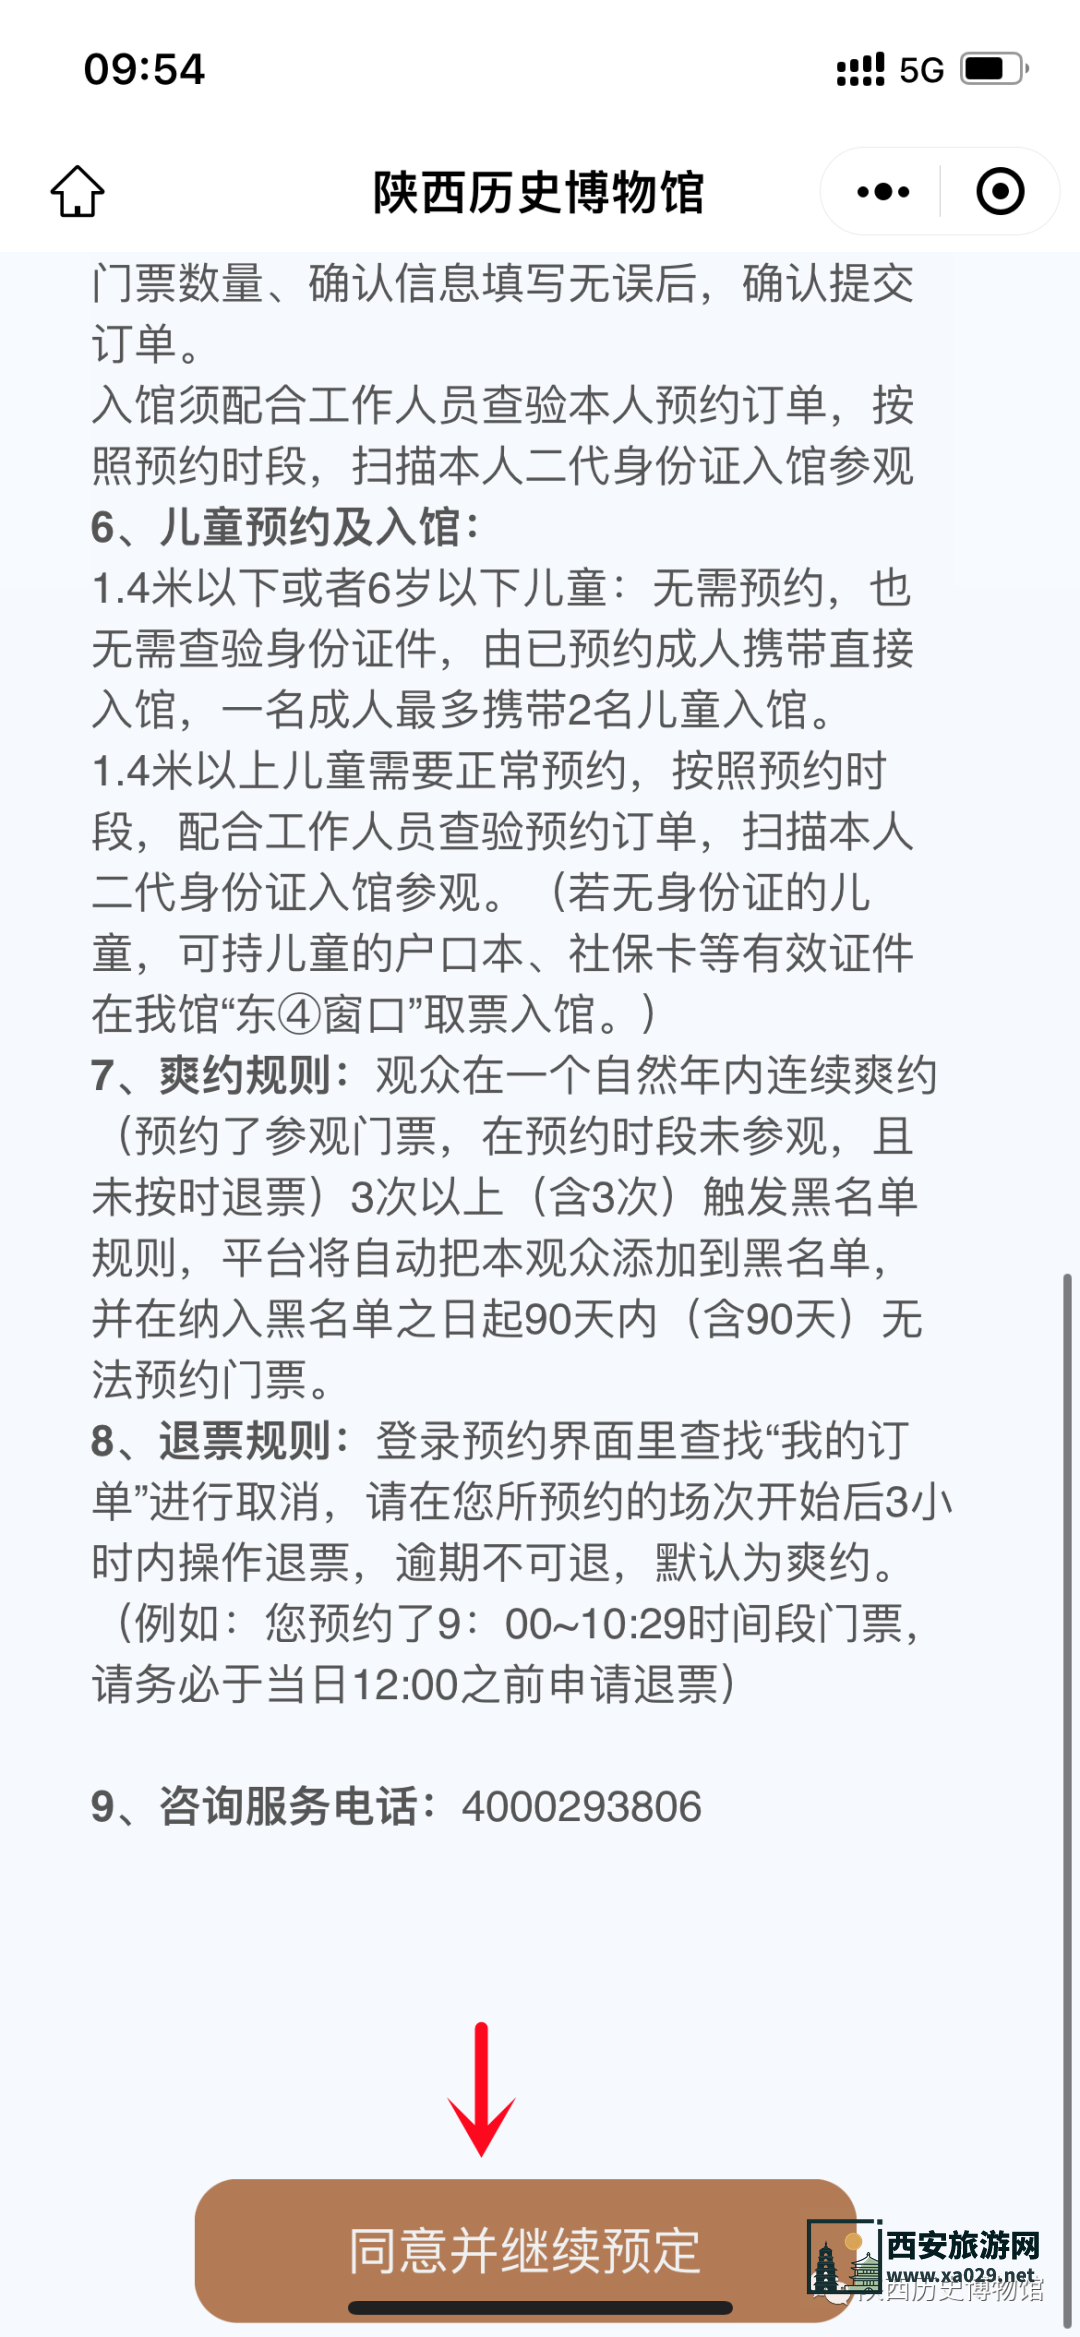 陕西历史博物馆官方网站预约平台及详细预约步骤攻略